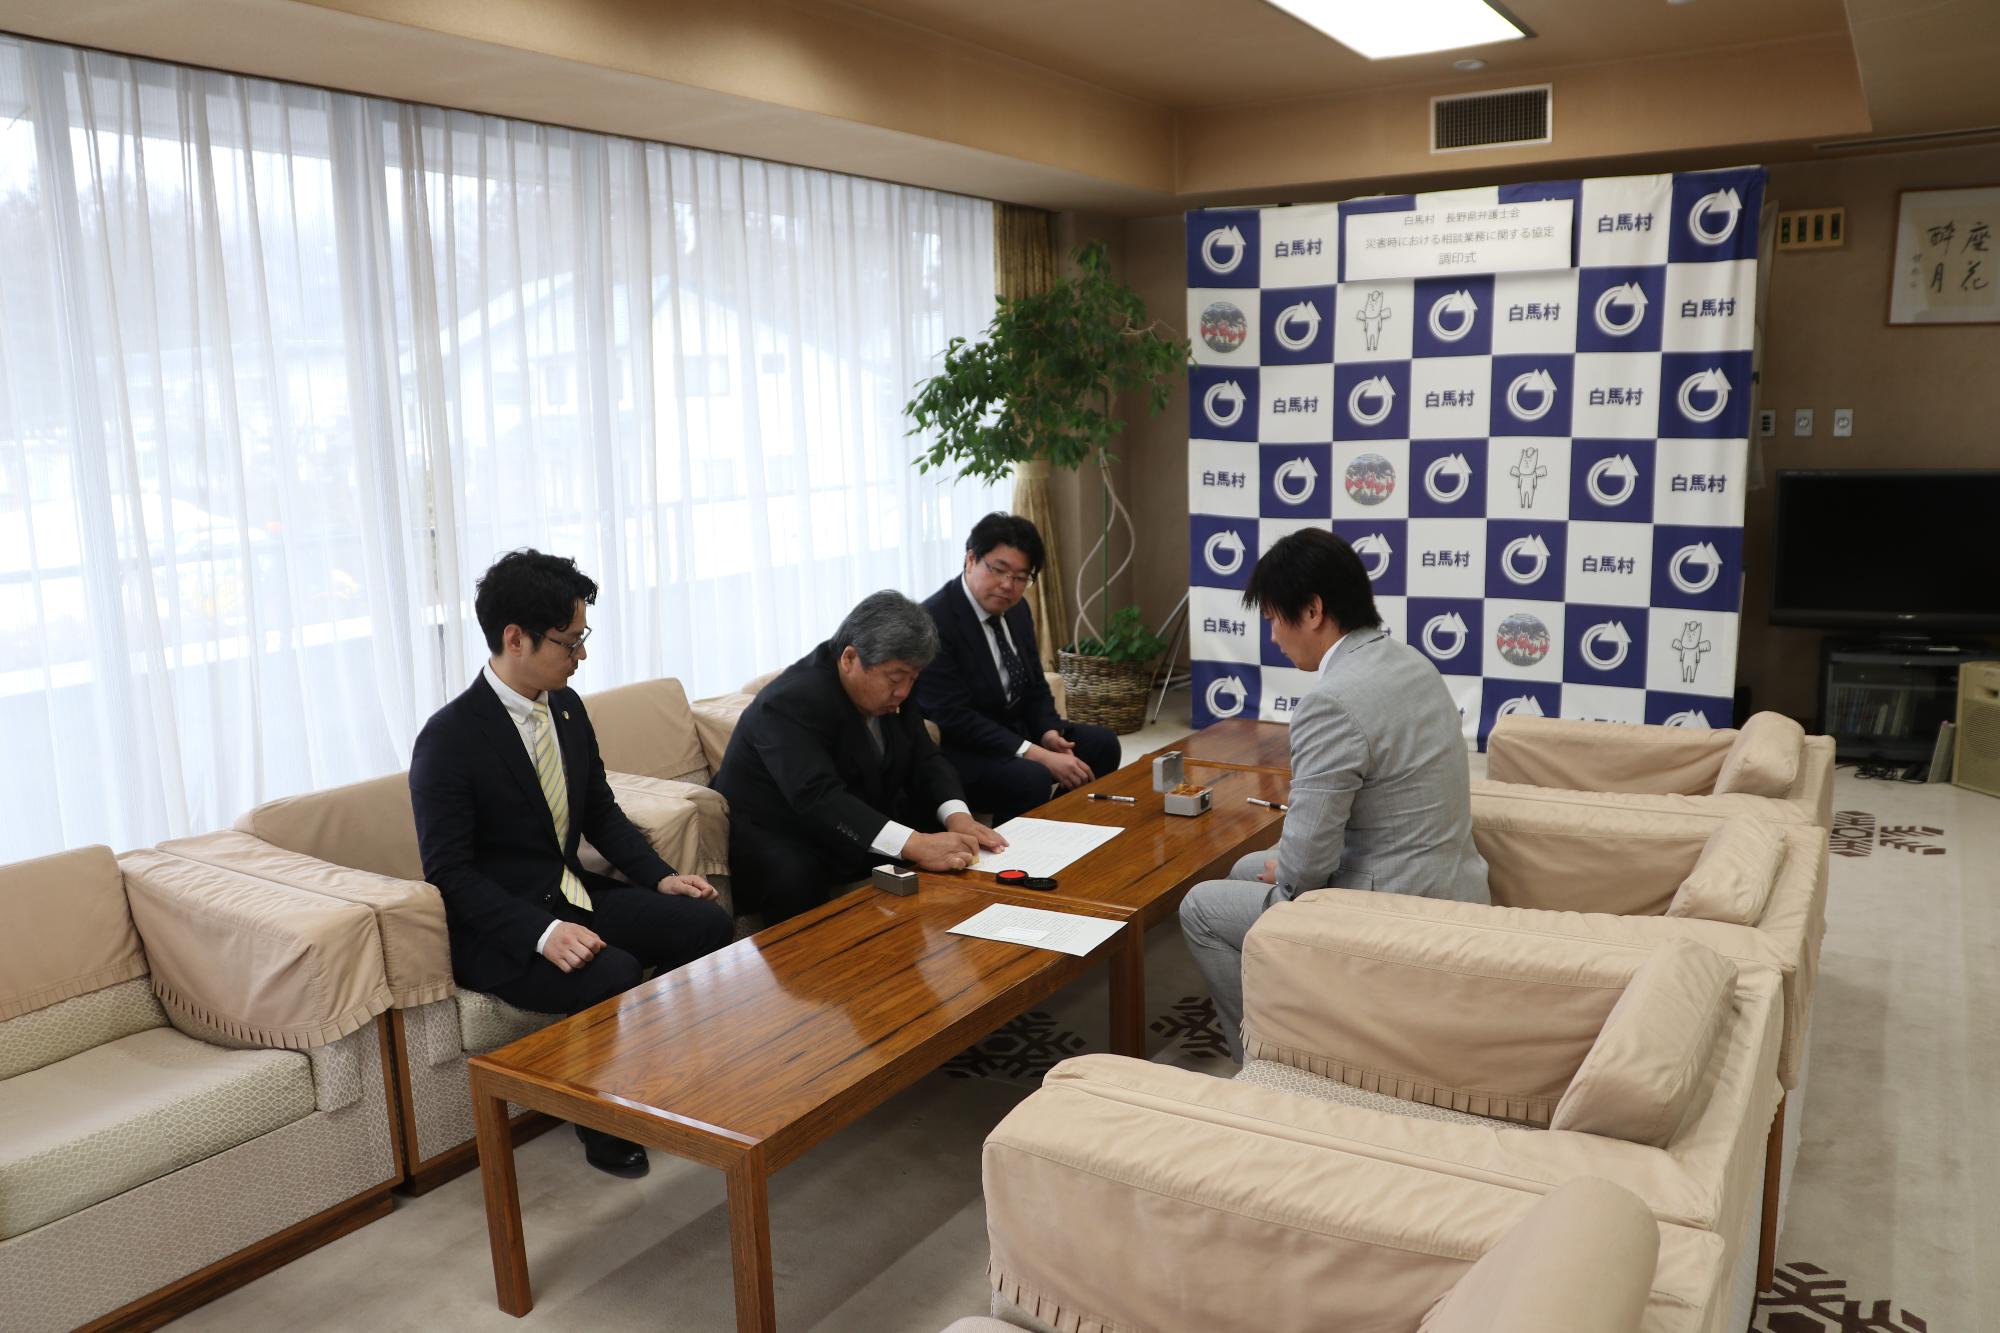 長野県弁護士会様と「災害時における相談業務に関する協定」を締結